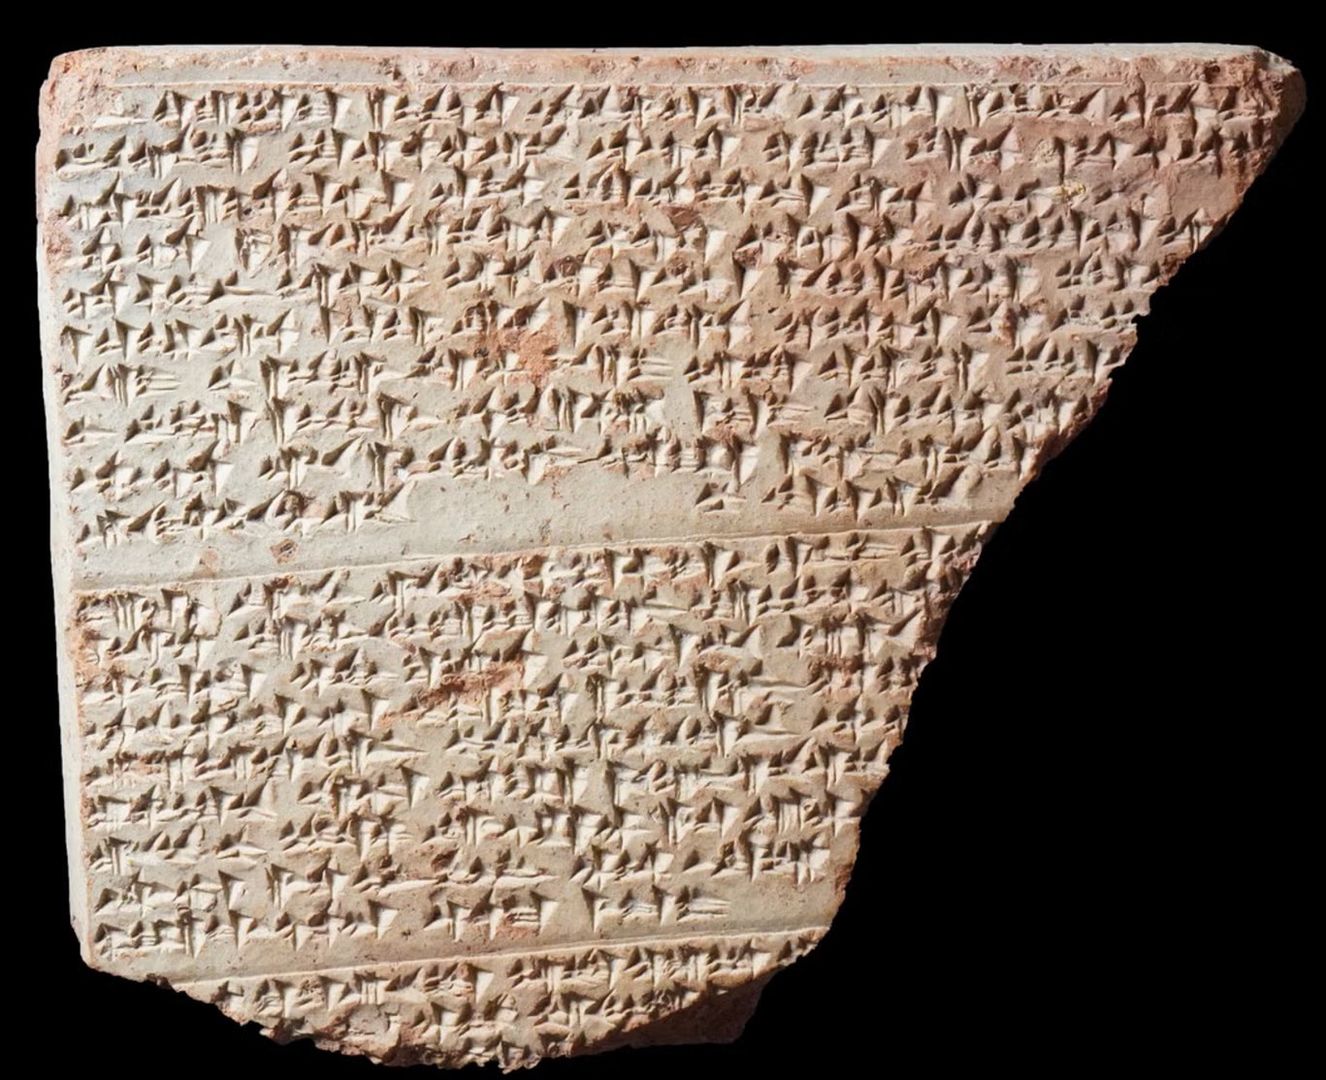 Odkryli nieznany język. Naukowcy wydobywają pismo sprzed 3000 lat